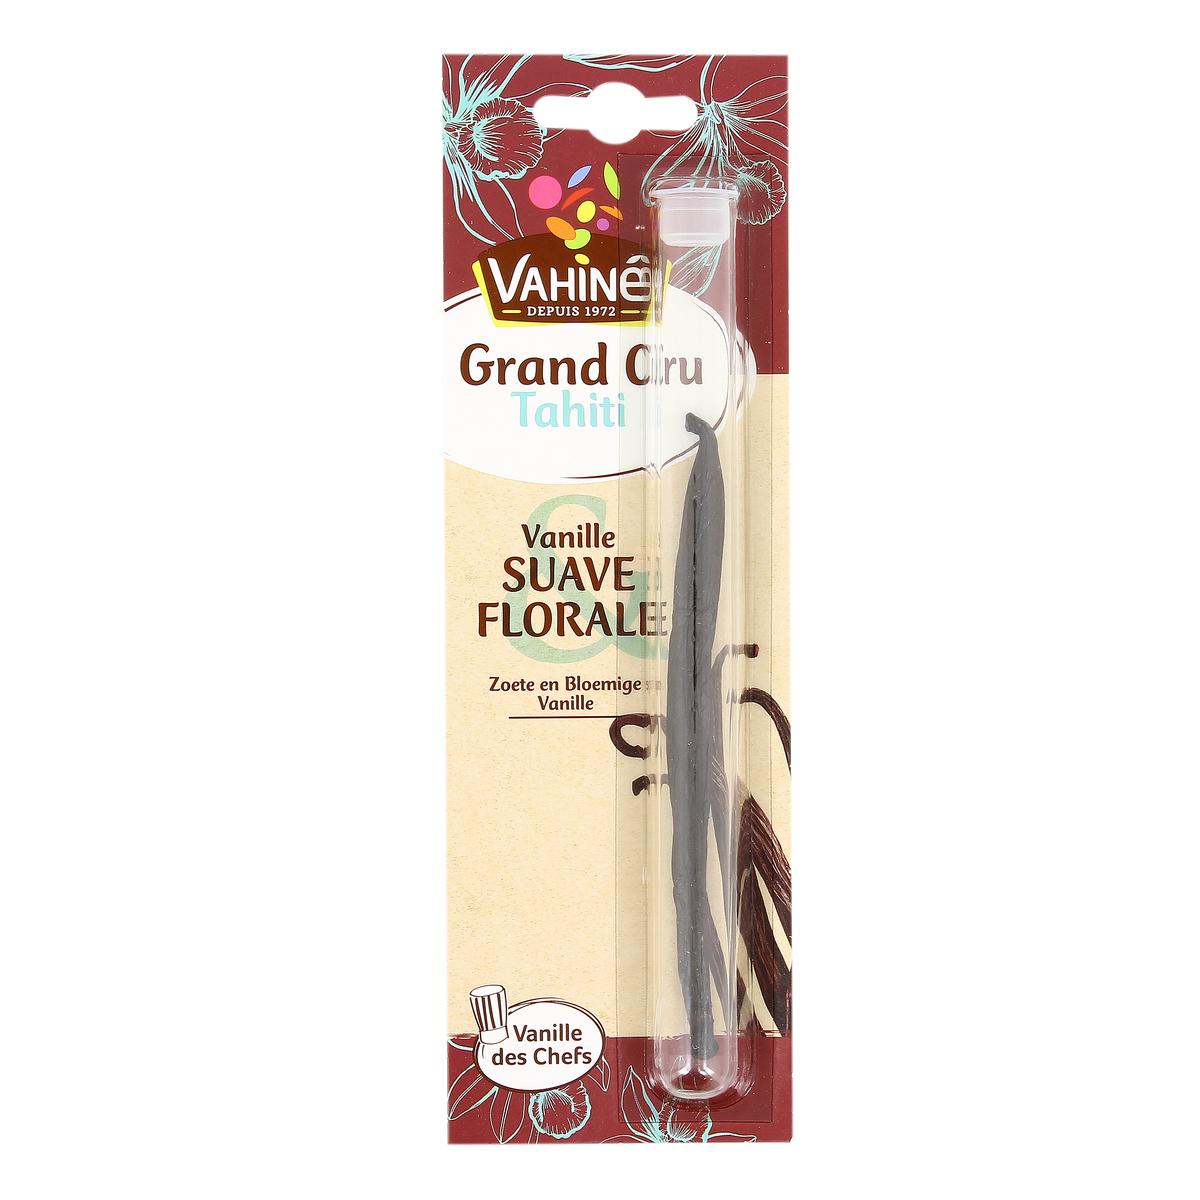 LOT DE 8 - VAHINE : Gousses de vanille en poudre sucrées 7 g